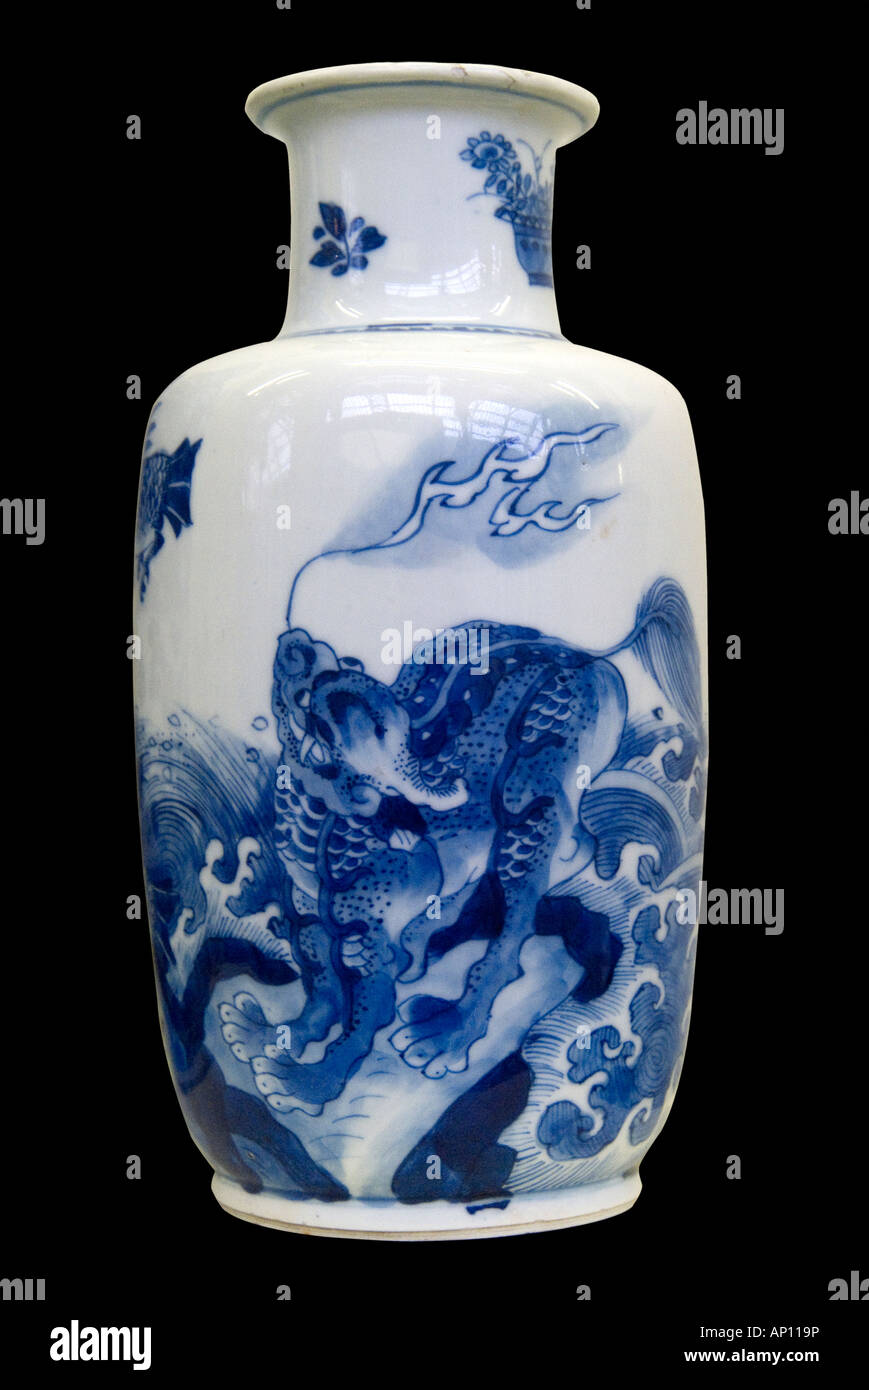 Dynastie des Ming vase chinois en céramique porcelaine dragon féroce feu équilibre symétrie harmonie grâce au nord-est de l'Asie Asie Chine Manchuri Banque D'Images